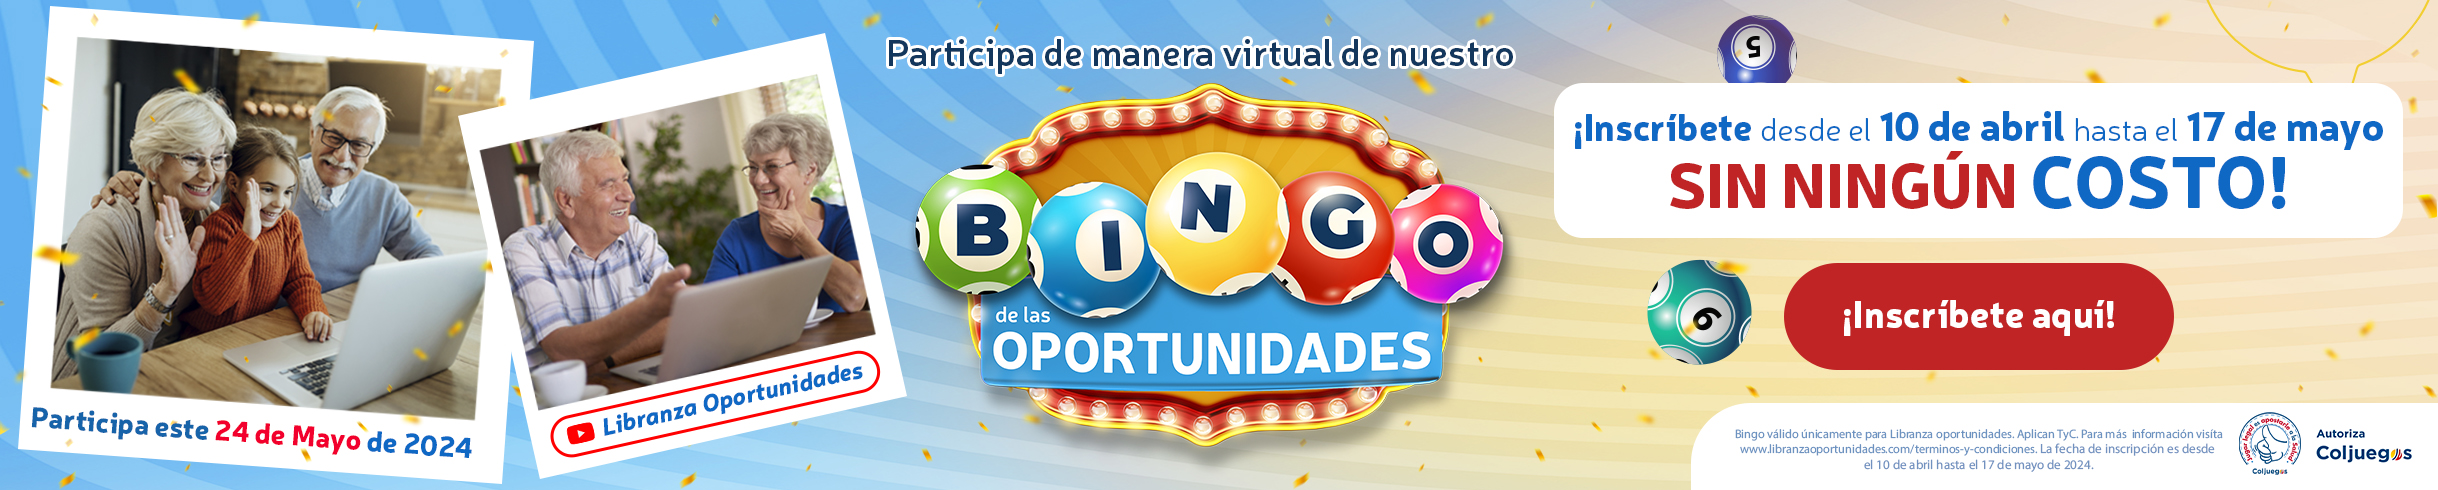 bingo-de-las-oportunidades